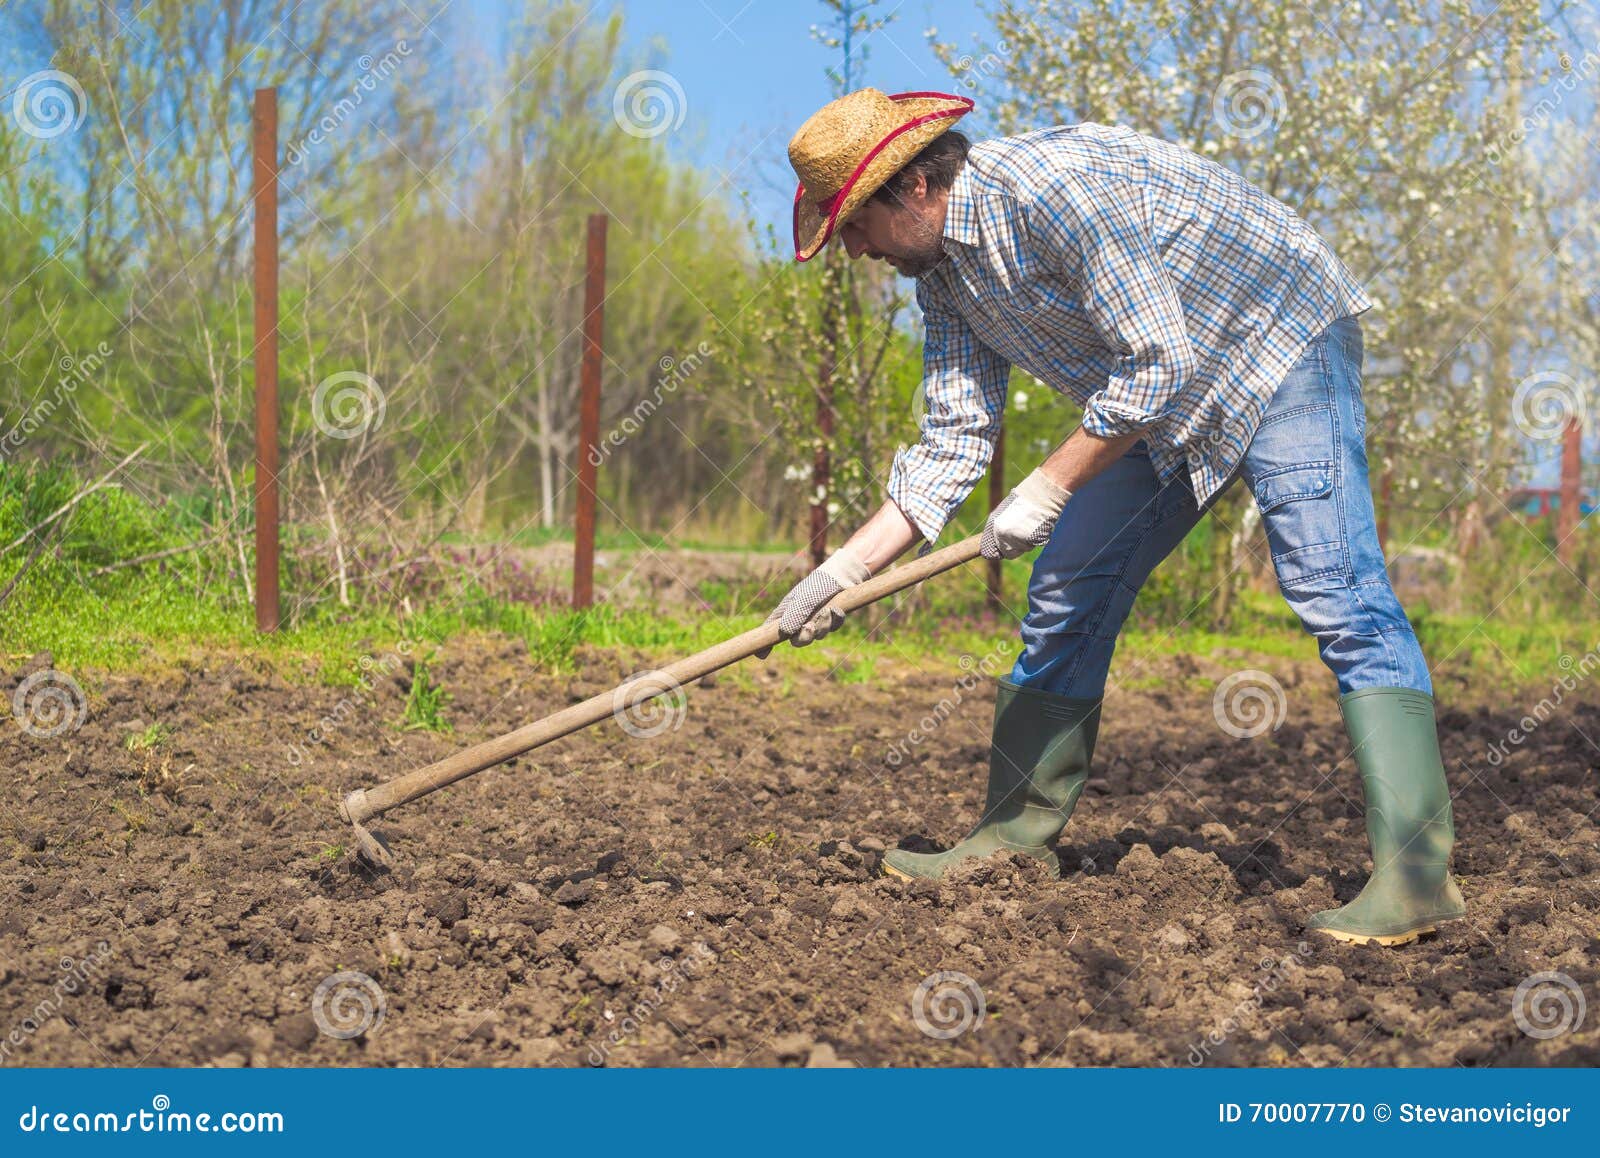 Man Hoeing Vegetable Garden Soil Stock Photo - Image of caucasian ...